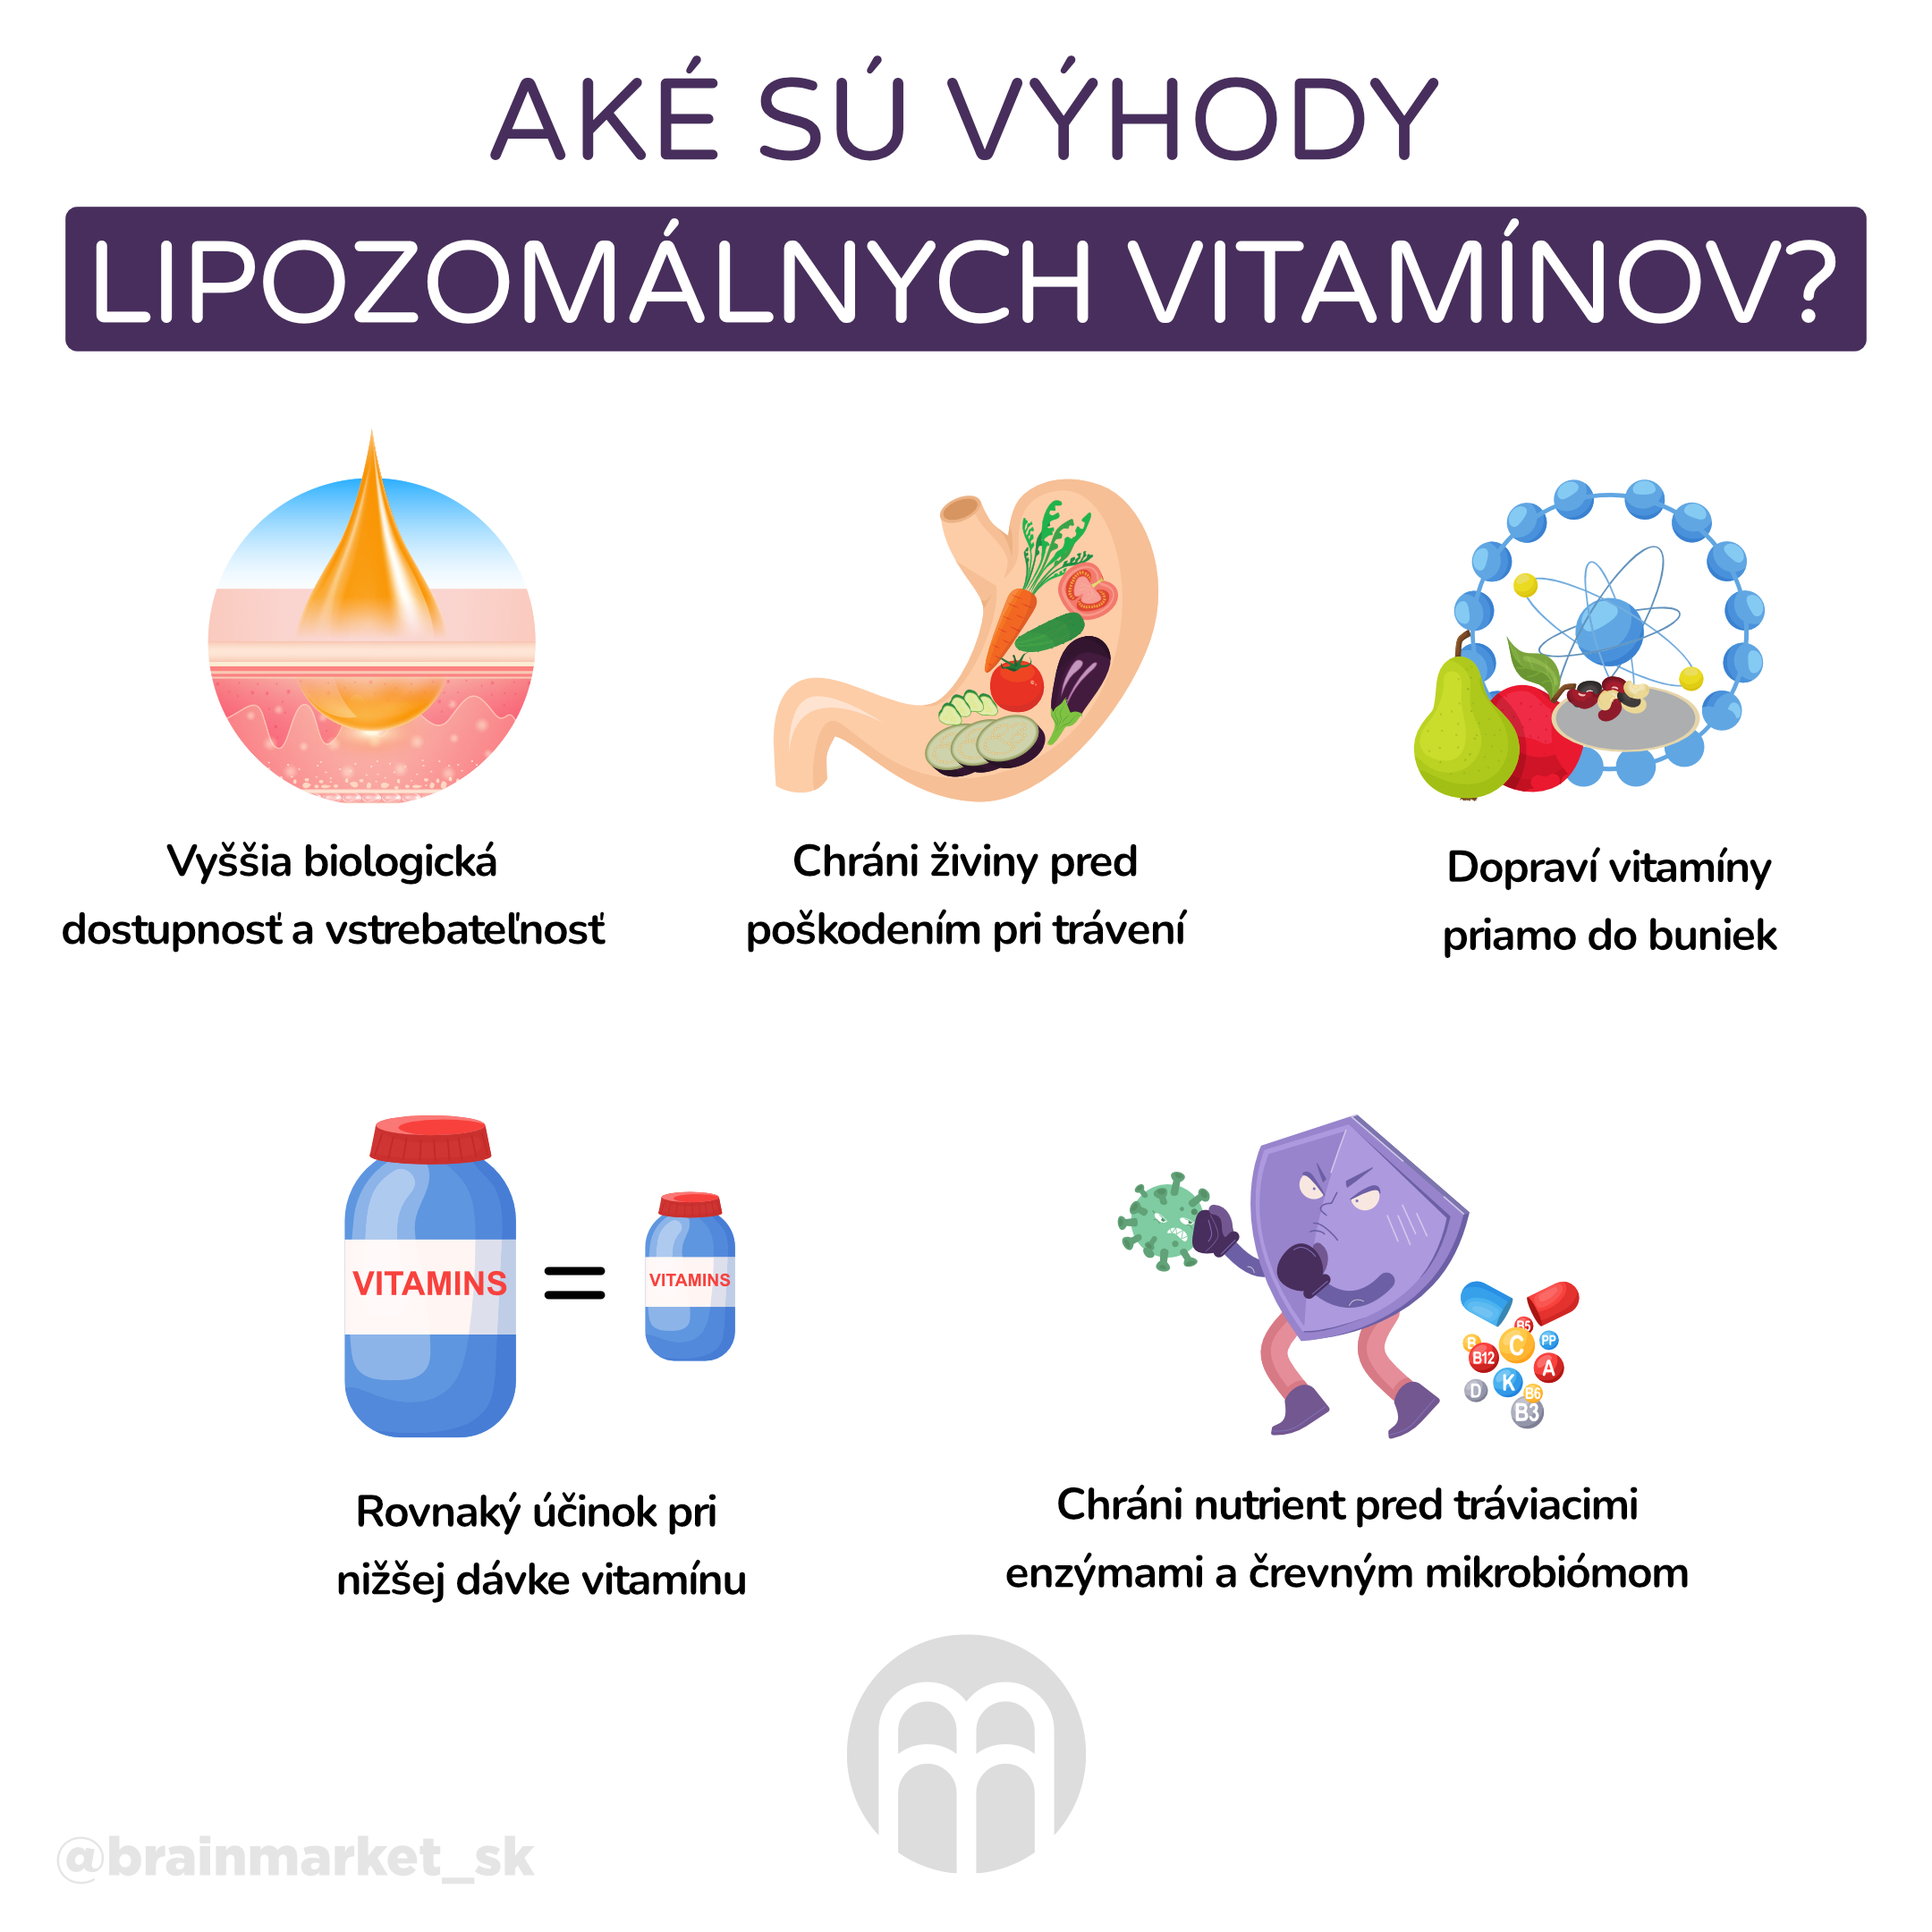 vyhody liposomálních vitamínu_infografika_cz